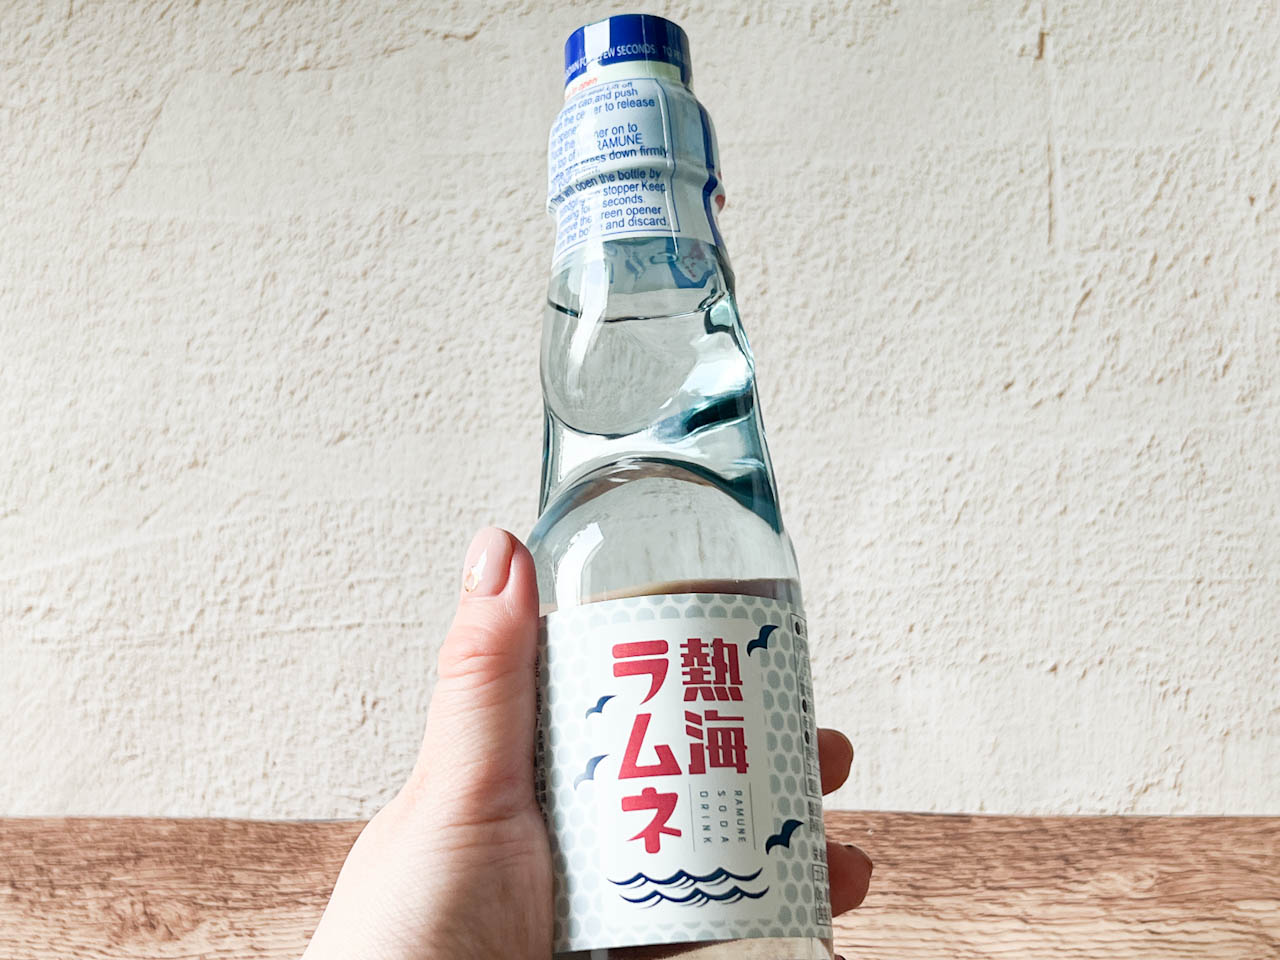 「熱海ラムネ」は、高さは約20cm、幅約5cmの手に馴染みやすい大きさ。形も昔懐かしいラムネの瓶そのまま